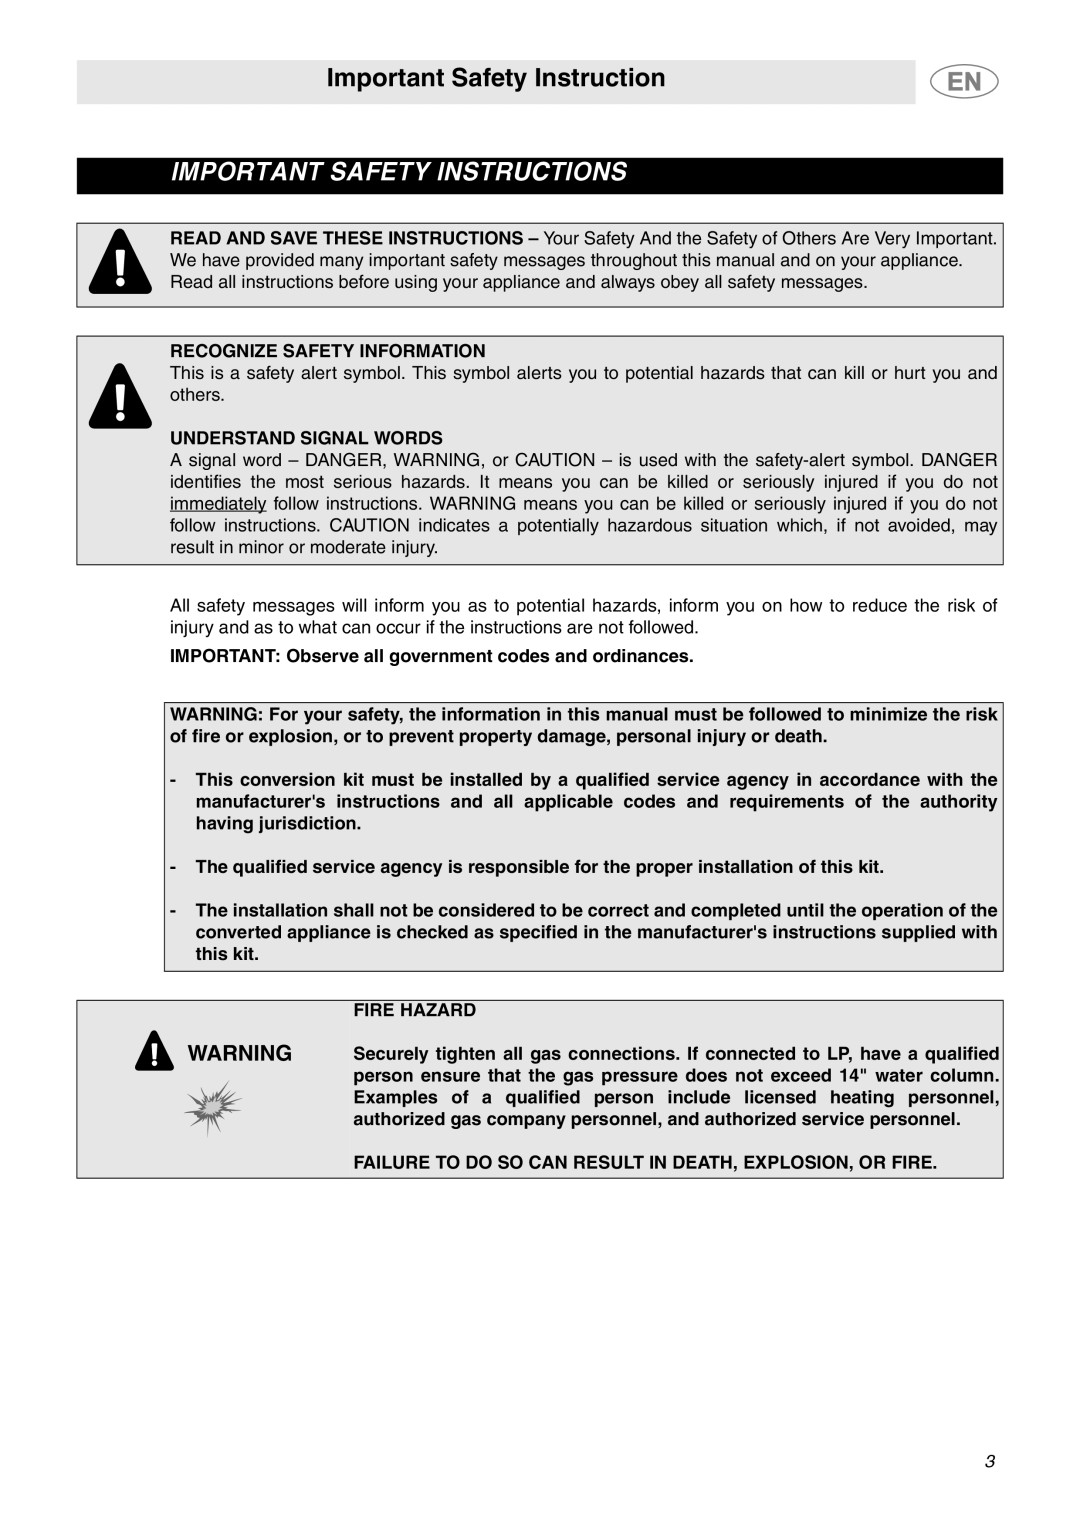 Smeg PGF95SCU3 important safety instructions Important Safety Instruction, Recognize Safety Information, Fire Hazard 